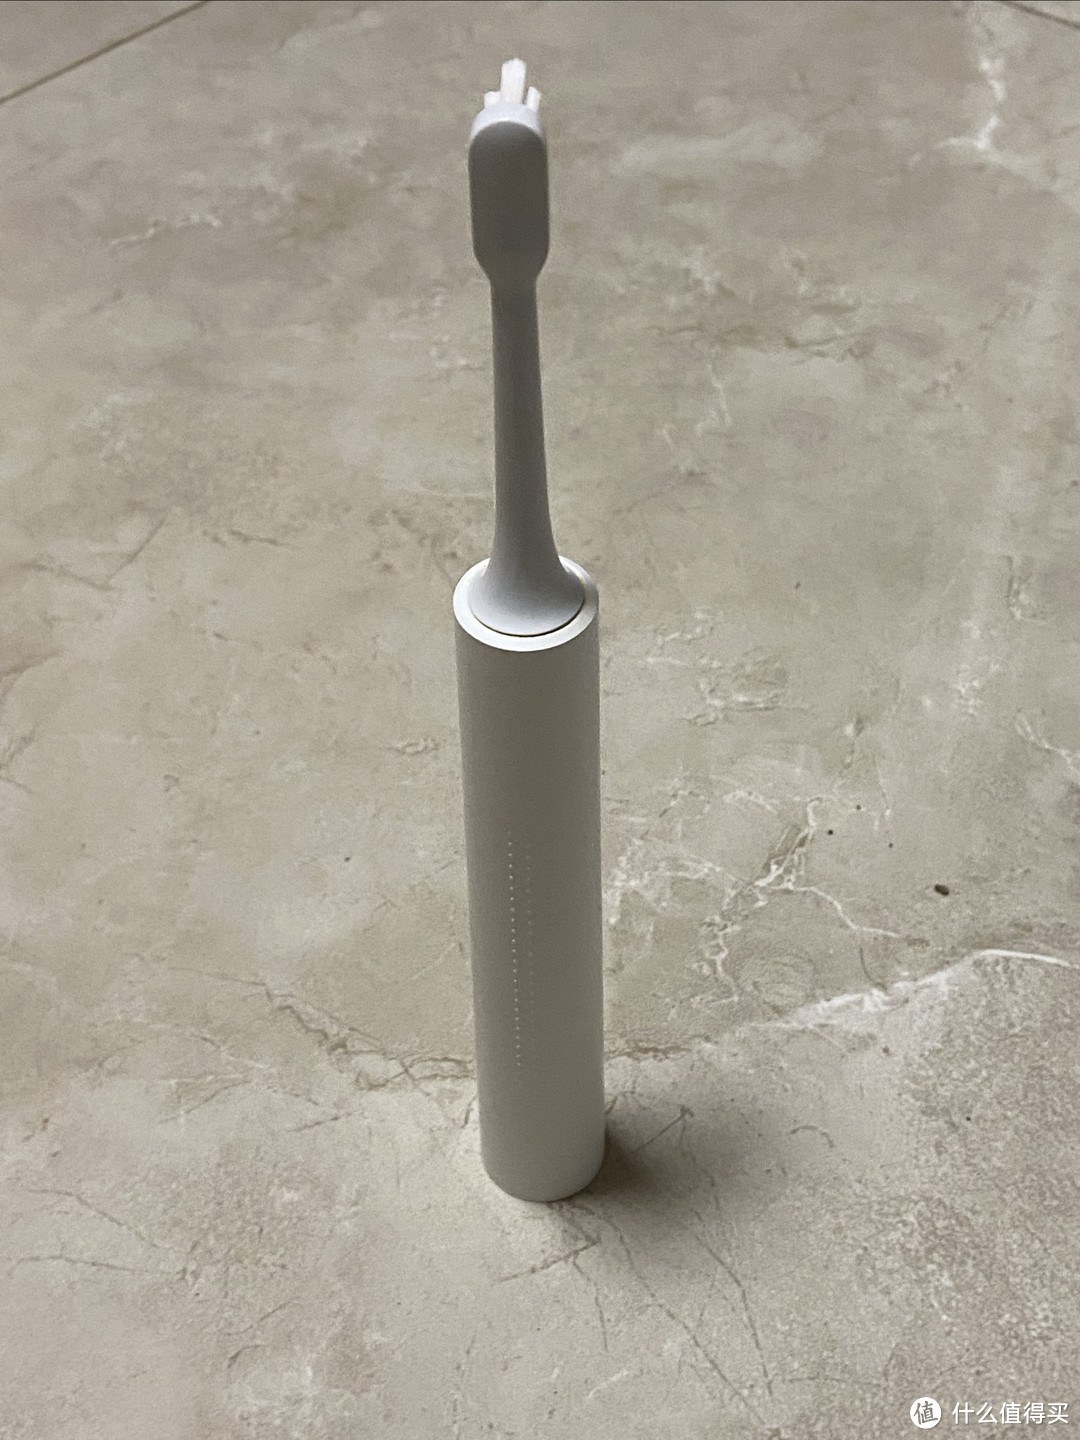 小米米家t302电动牙刷是一款性价比极高的电动牙刷。